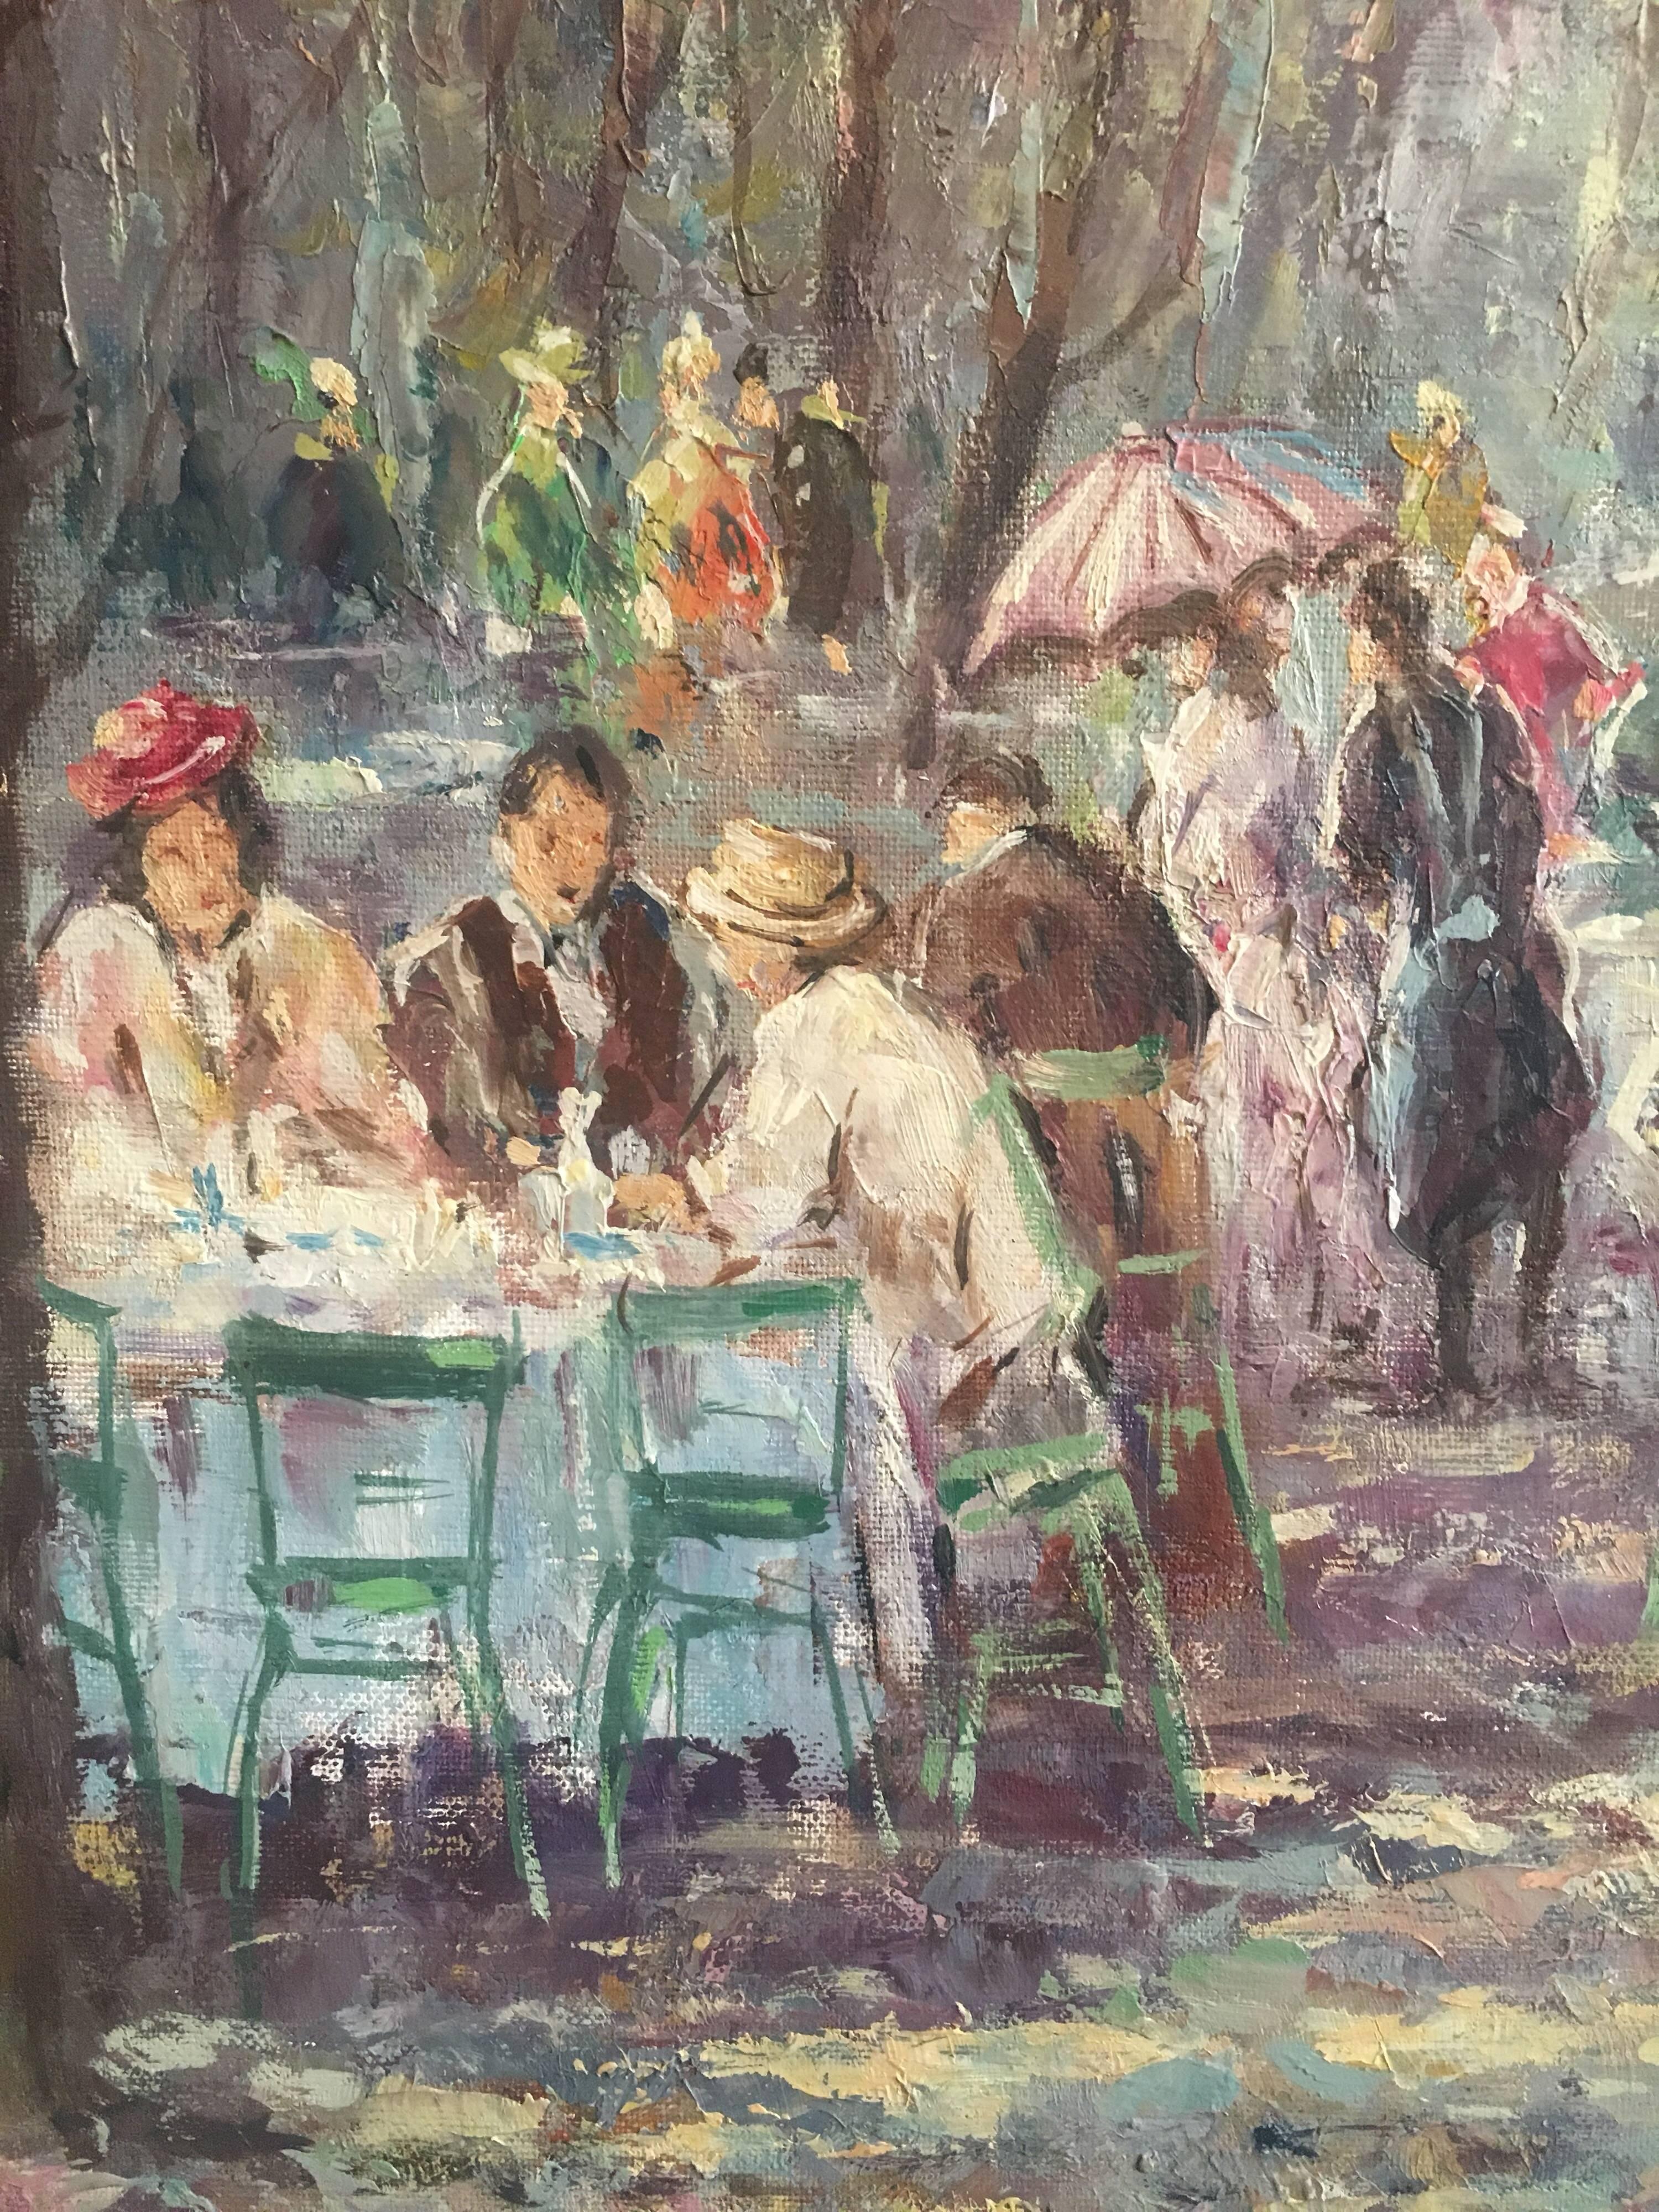 Chiffres dans le café Busy Park
Par l'artiste H.Hartung, 20ème siècle
Peinture à l'huile sur toile, encadrée
Signé dans le coin inférieur droit
Taille du cadre : 33 x 29 pouces

Merveilleuse scène multicolore d'un café animé au milieu d'un parc. Les